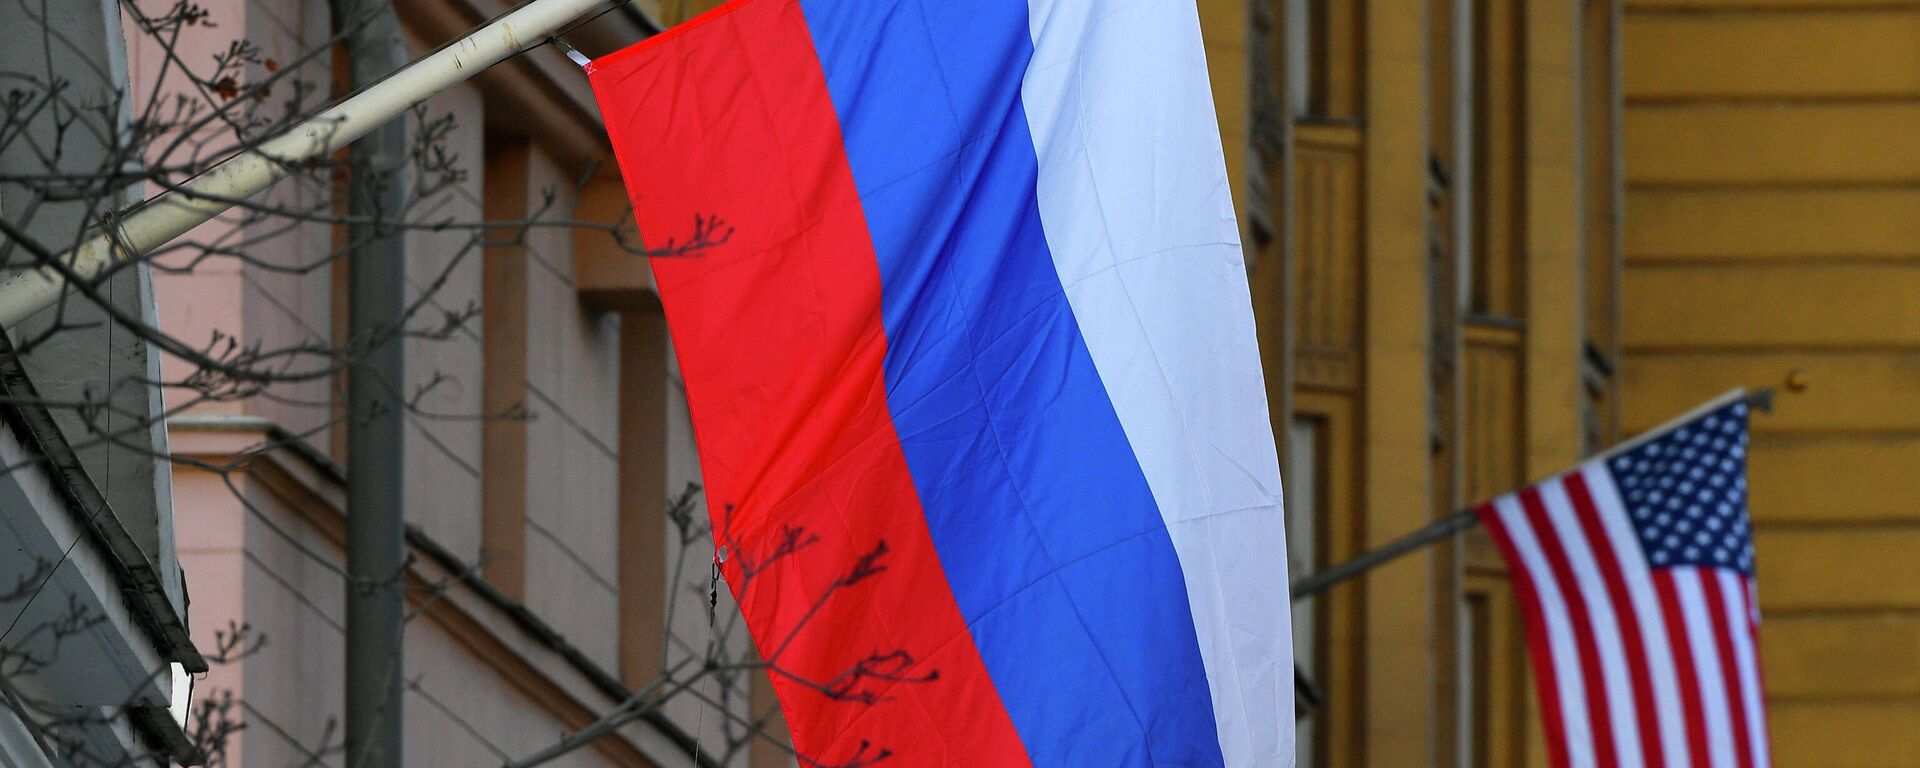 Banderas de Rusia y EEUU en la Embajada estadounidense en Moscú - Sputnik Mundo, 1920, 08.10.2021